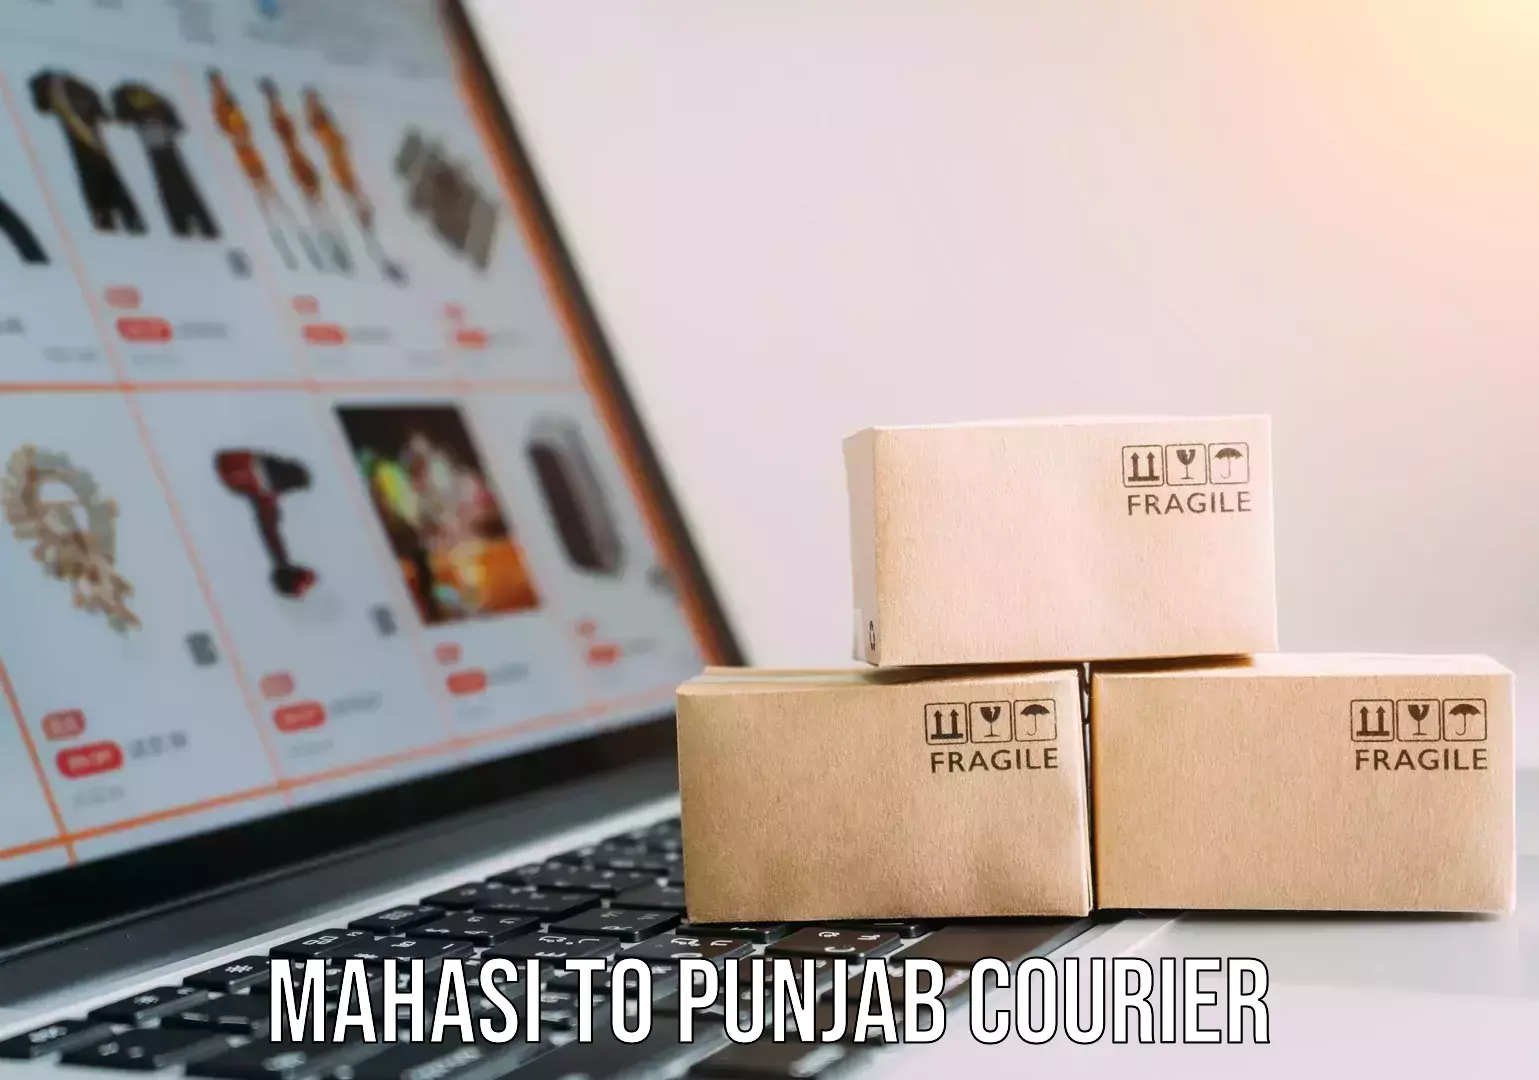 Nationwide furniture movers Mahasi to Punjab